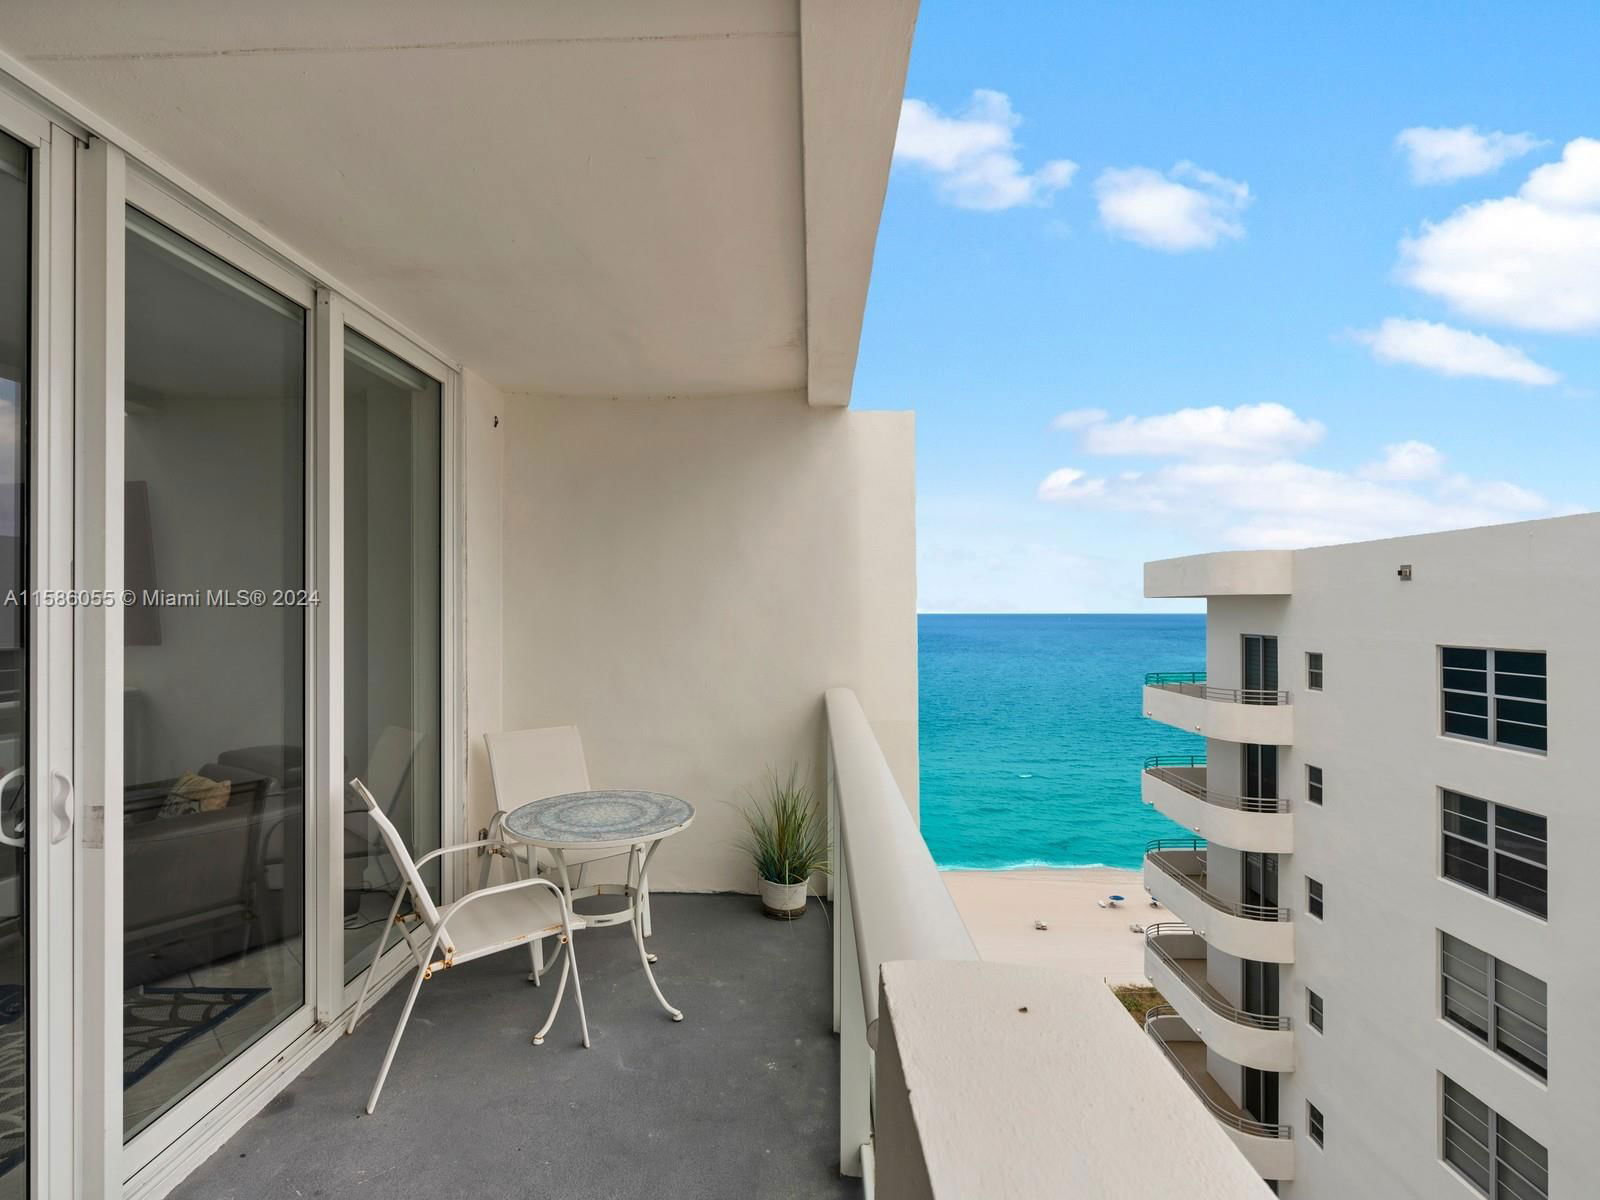 Real estate property located at 5601 Collins Ave #1714, Miami-Dade County, THE PAVILION CONDO, Miami Beach, FL